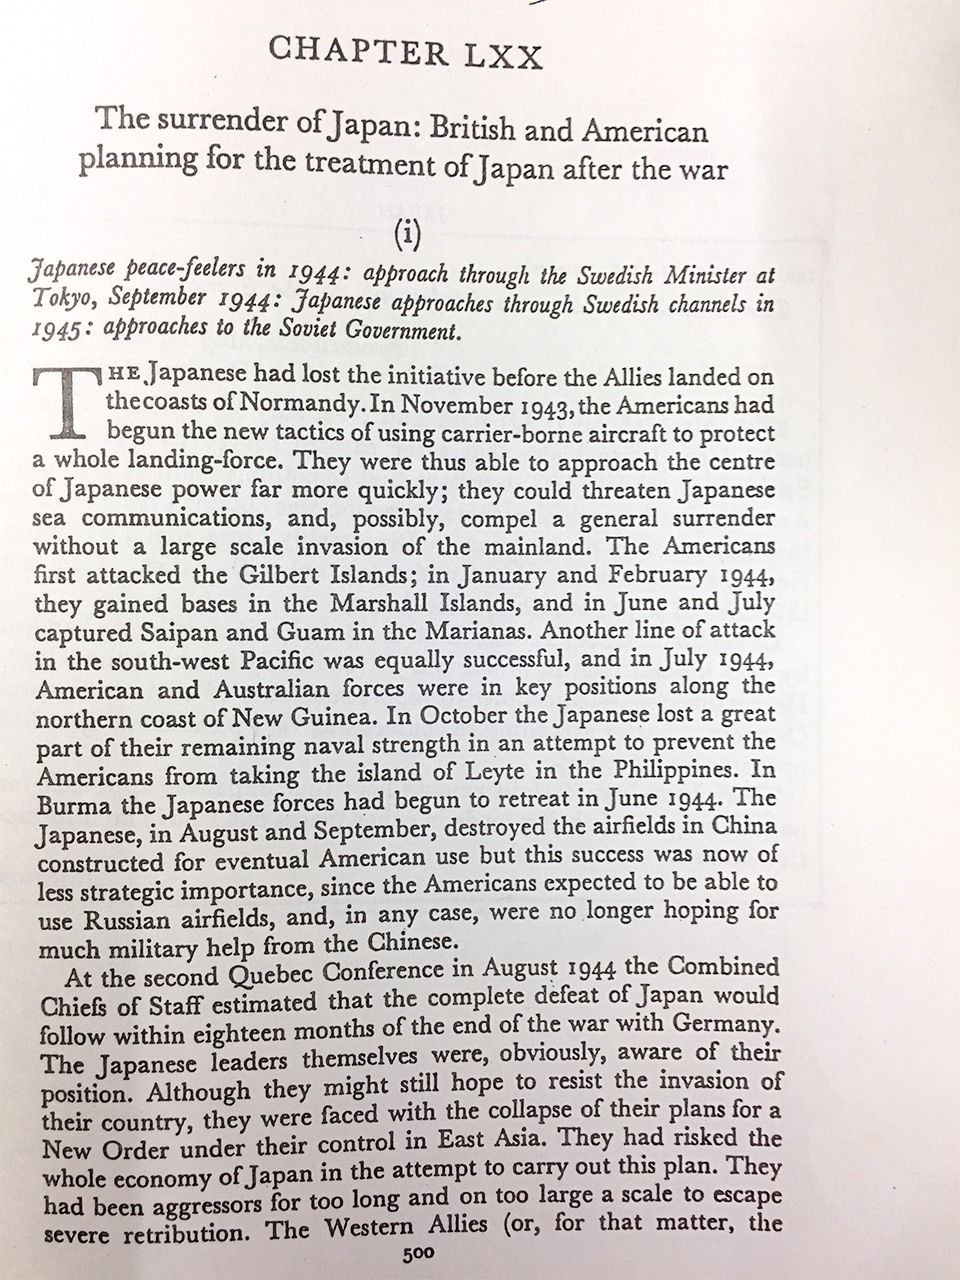 小野寺の和平依頼を国王が何事かアレンジしたと記された英外務省公刊史『英国の第二次大戦中の外交政策』の第六章「日本の降伏―戦後の日本の取り扱いについて英国と米国の計画」